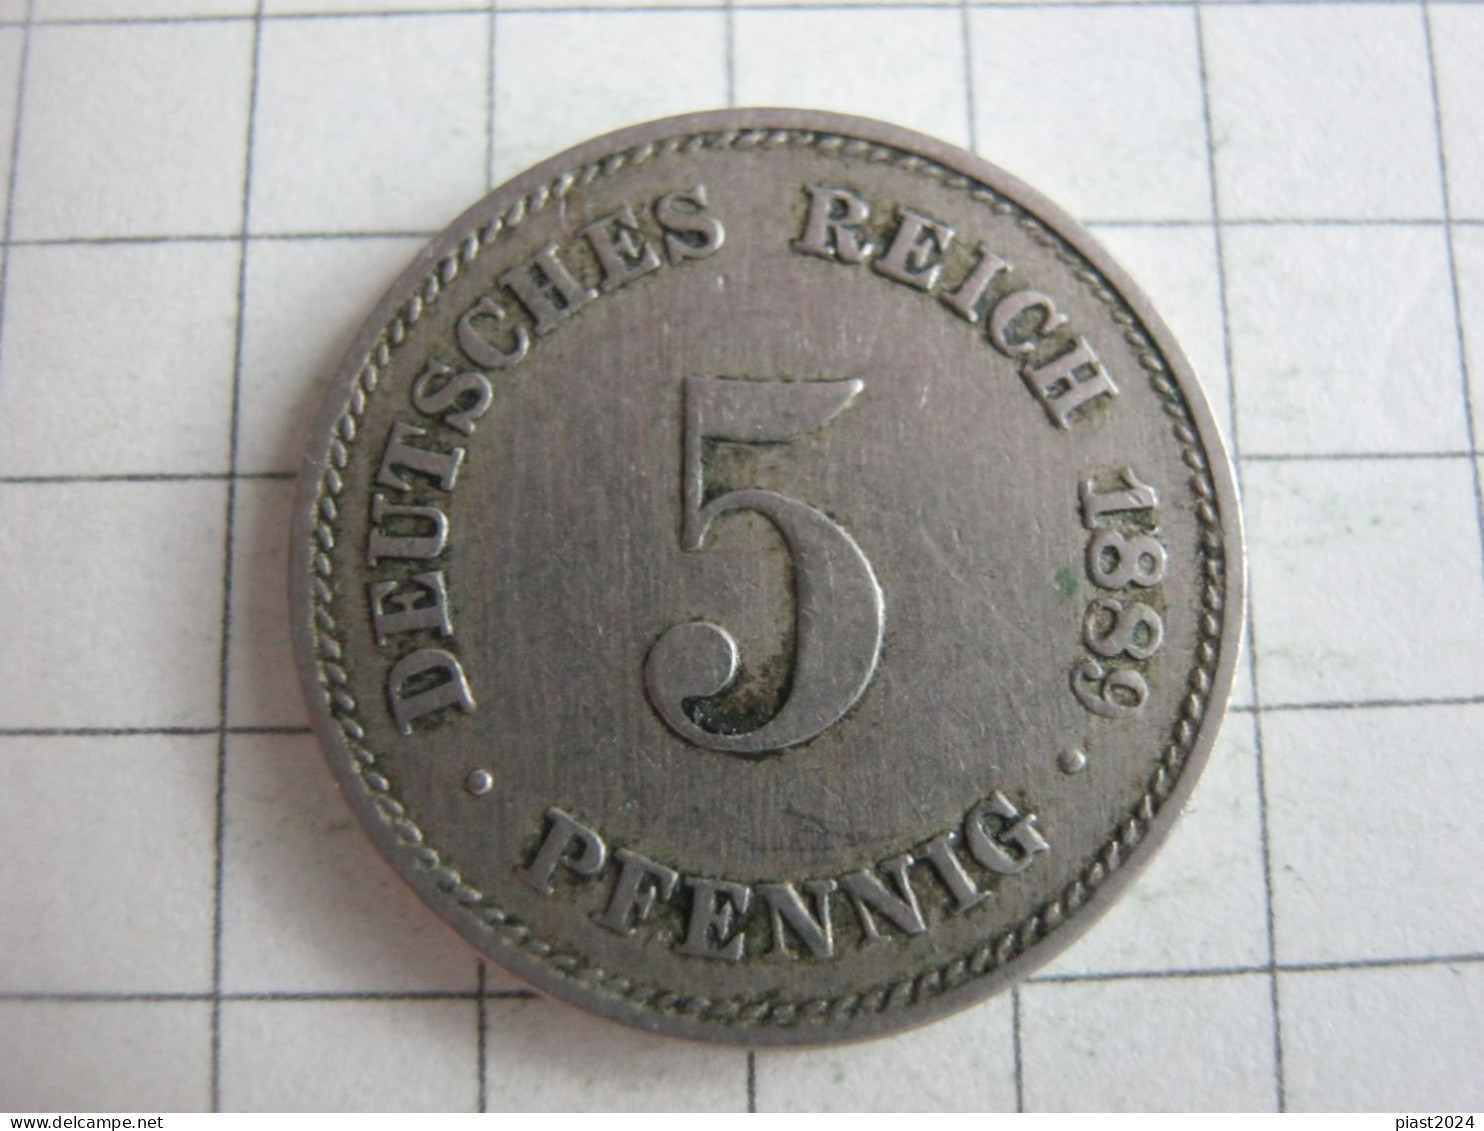 Germany 5 Pfennig 1889 D - 5 Pfennig